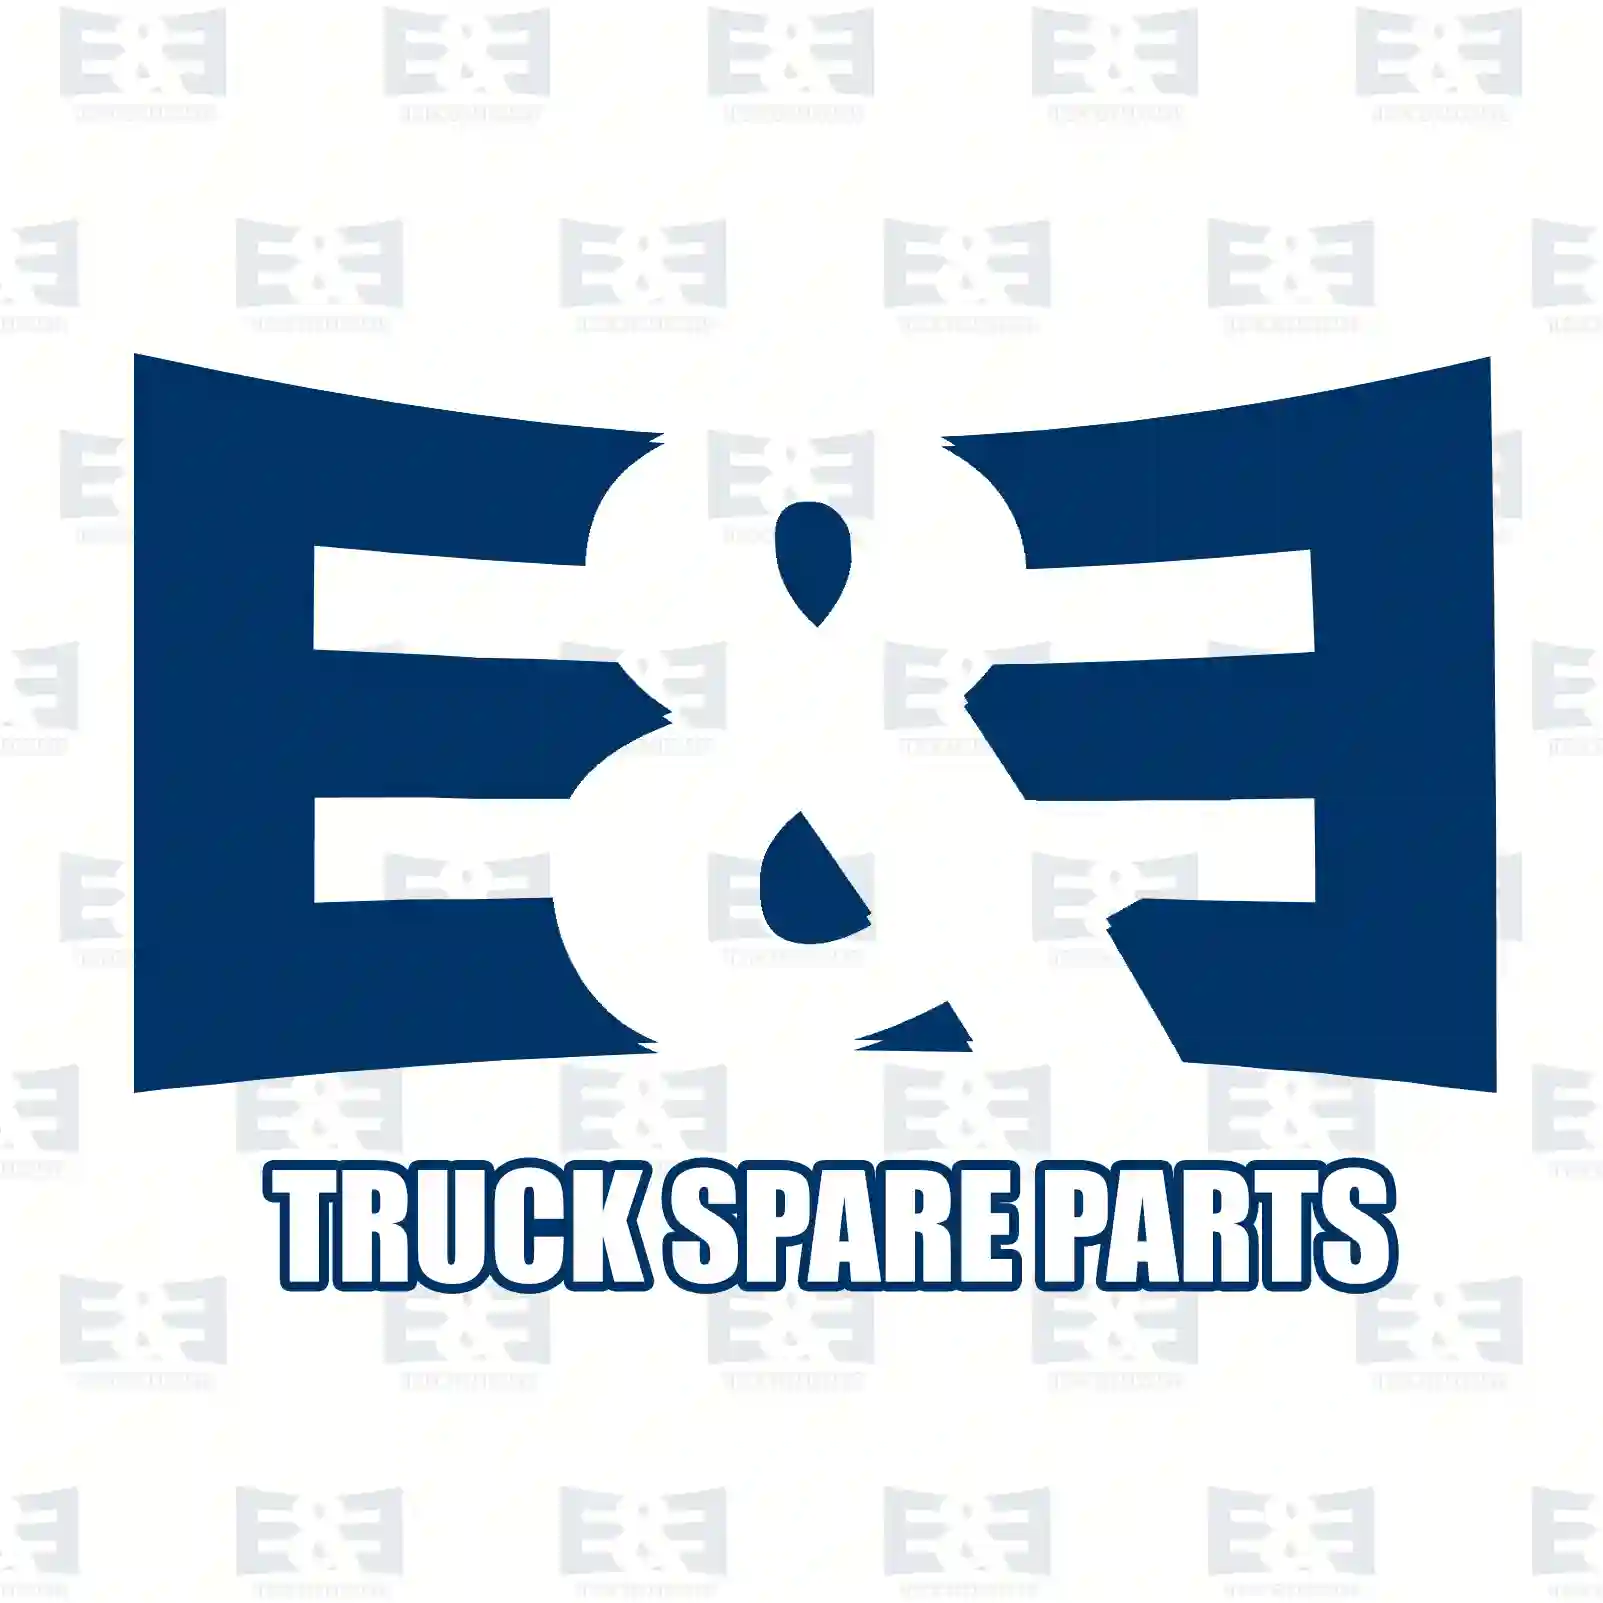 Service kit, filter - S, 2E2207011, 1732951, 564550, ZG02091-0008 ||  2E2207011 E&E Truck Spare Parts | Truck Spare Parts, Auotomotive Spare Parts Service kit, filter - S, 2E2207011, 1732951, 564550, ZG02091-0008 ||  2E2207011 E&E Truck Spare Parts | Truck Spare Parts, Auotomotive Spare Parts